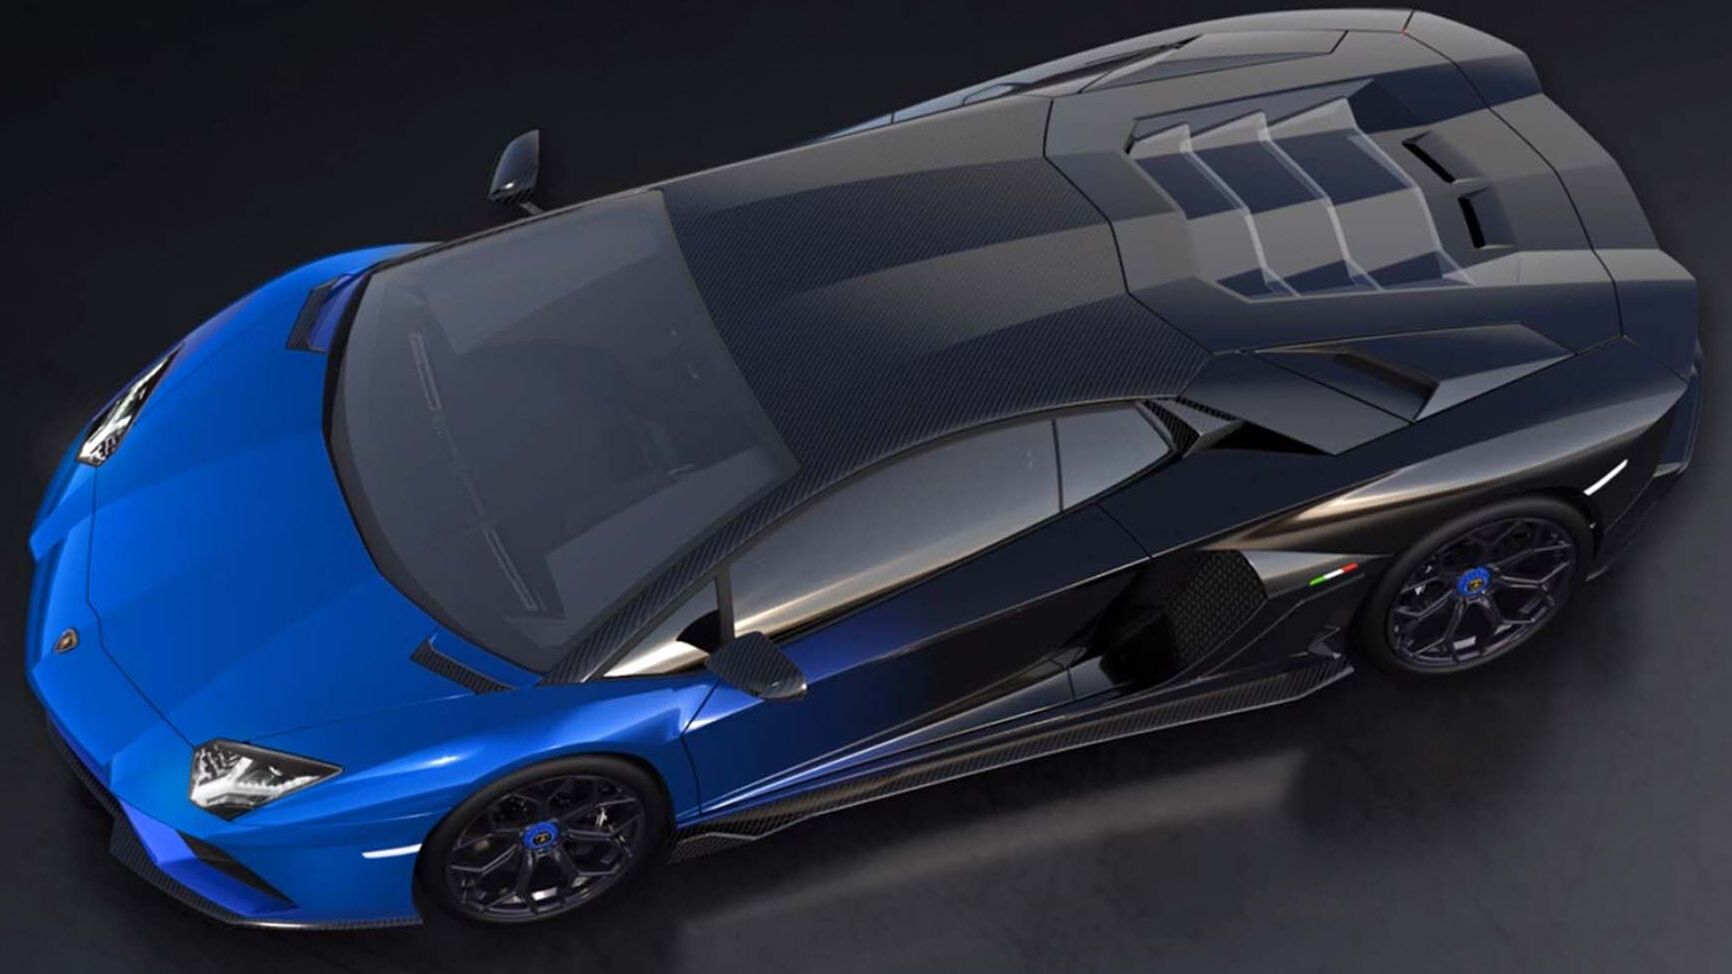 Išskirtinis Lamborghini Aventador LP 780-4 Ultimae Coupé bus suporuotas su NFT 1.1 ir naujesne versija aukcione